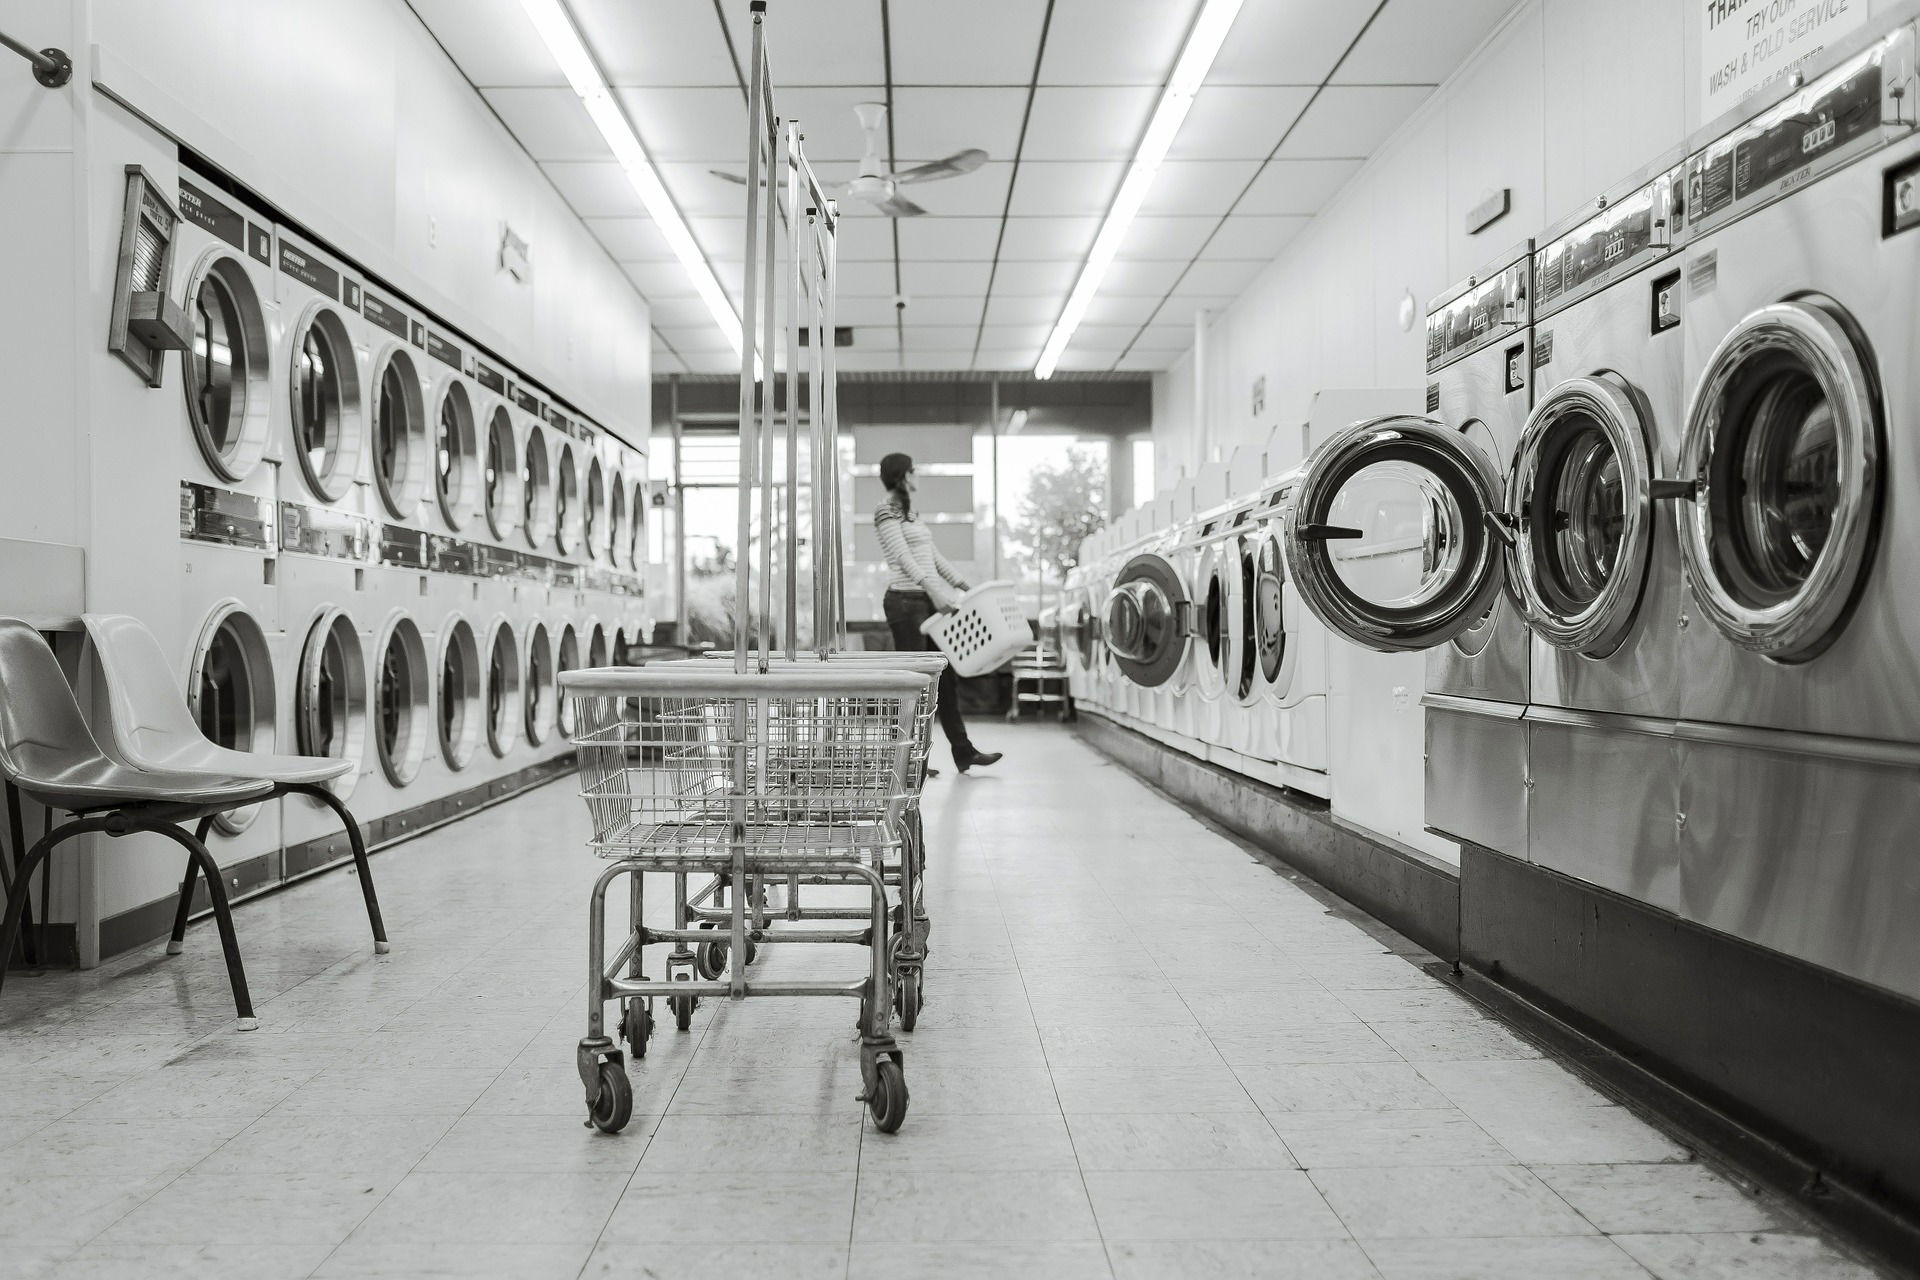  lavadero de ropa industrial